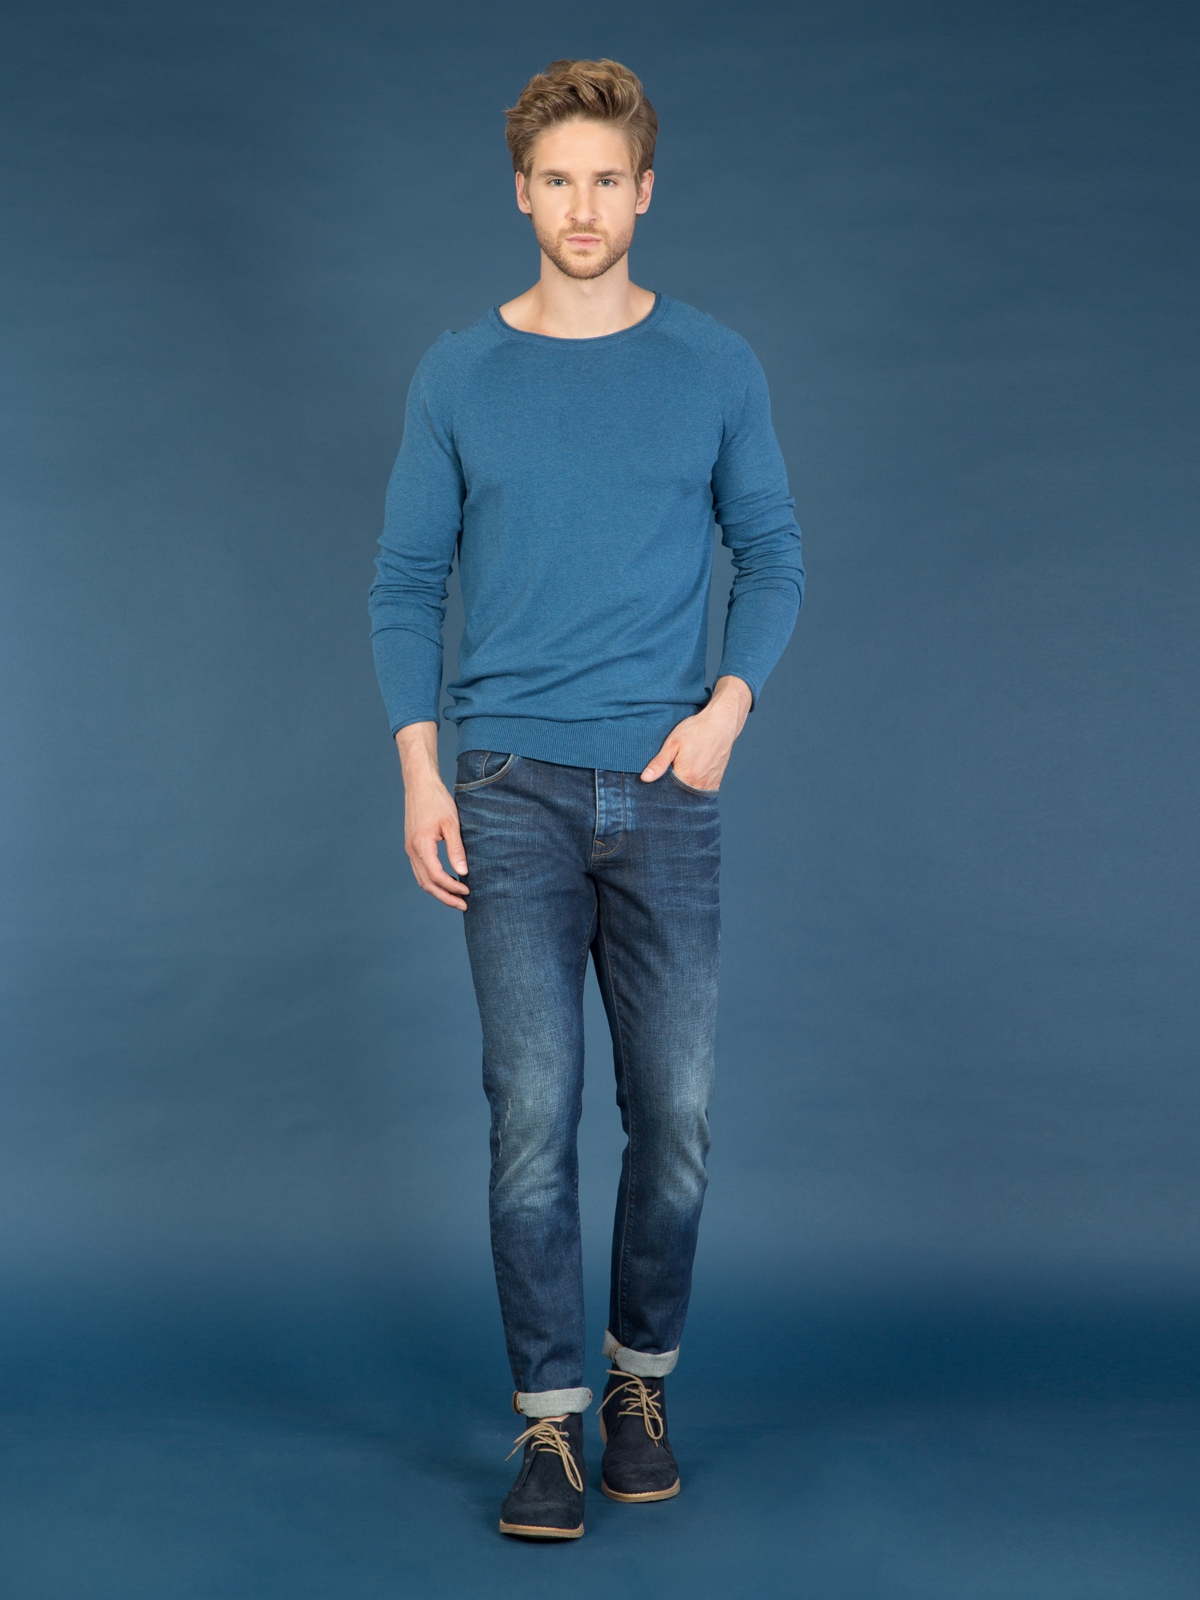 Colins Blue Men Sweaters. 3